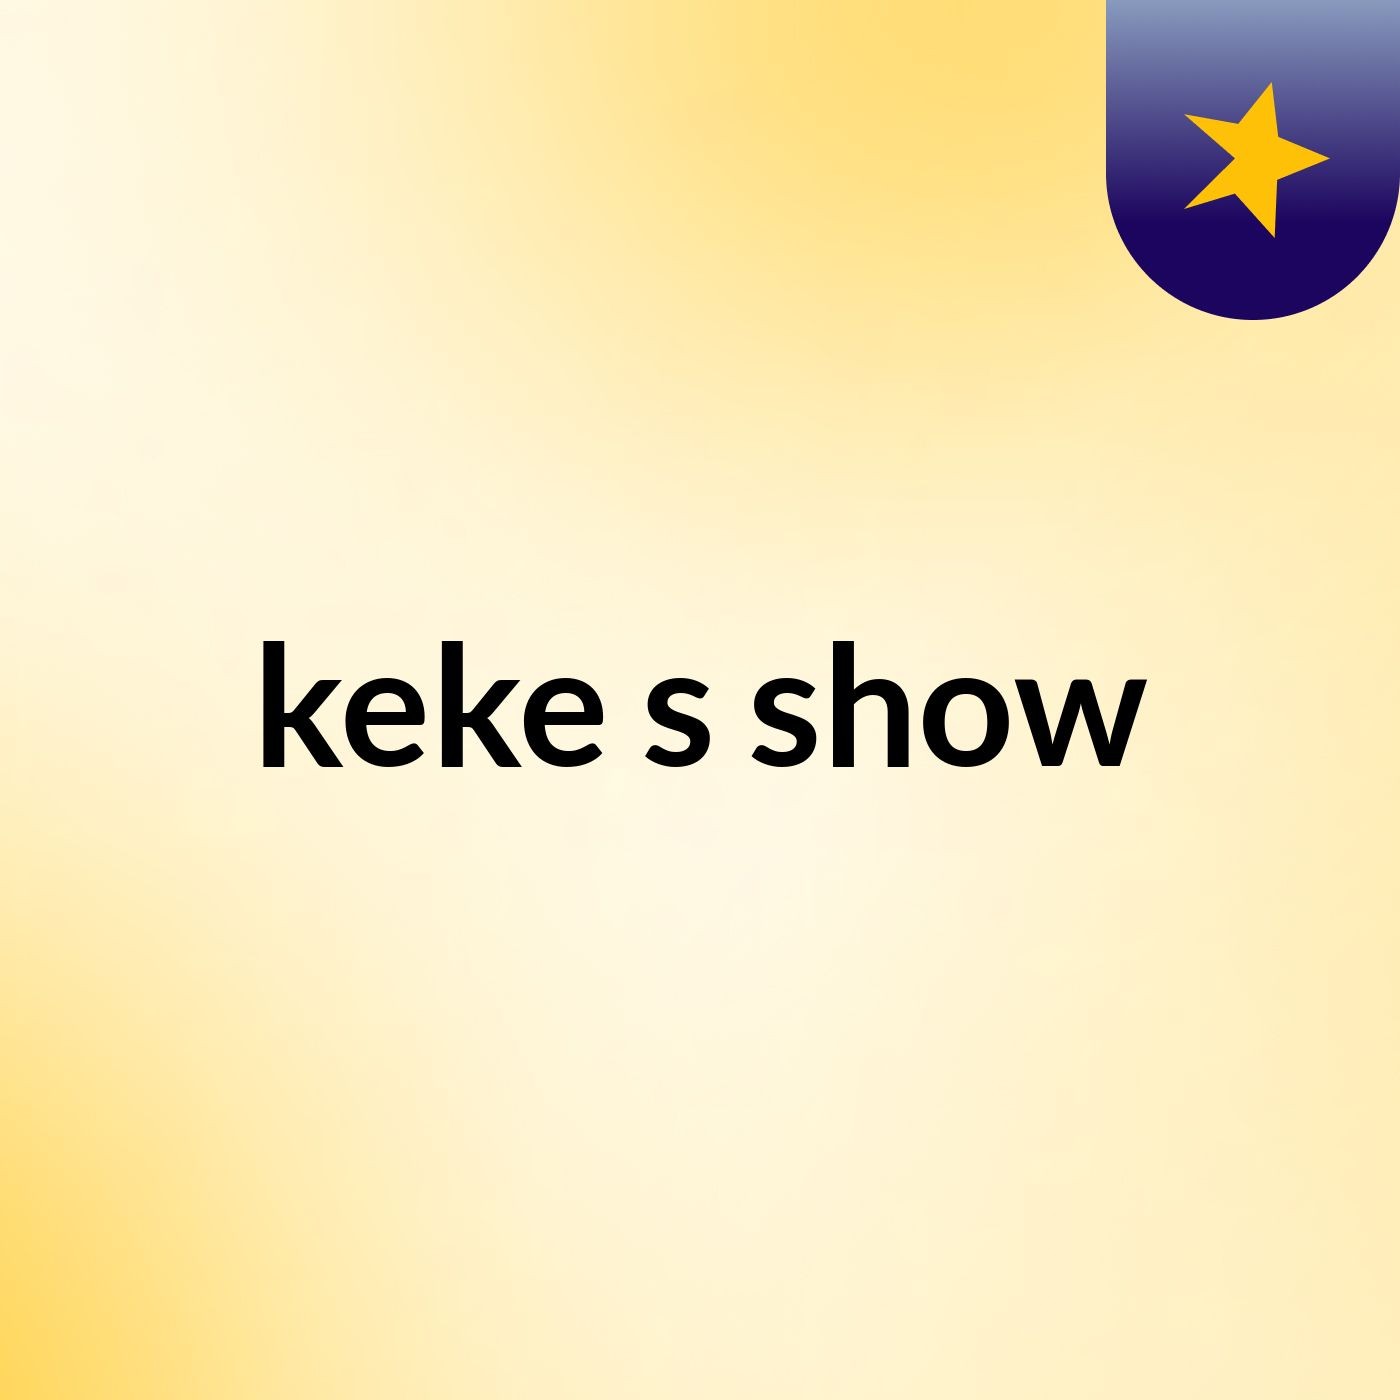 keke's show